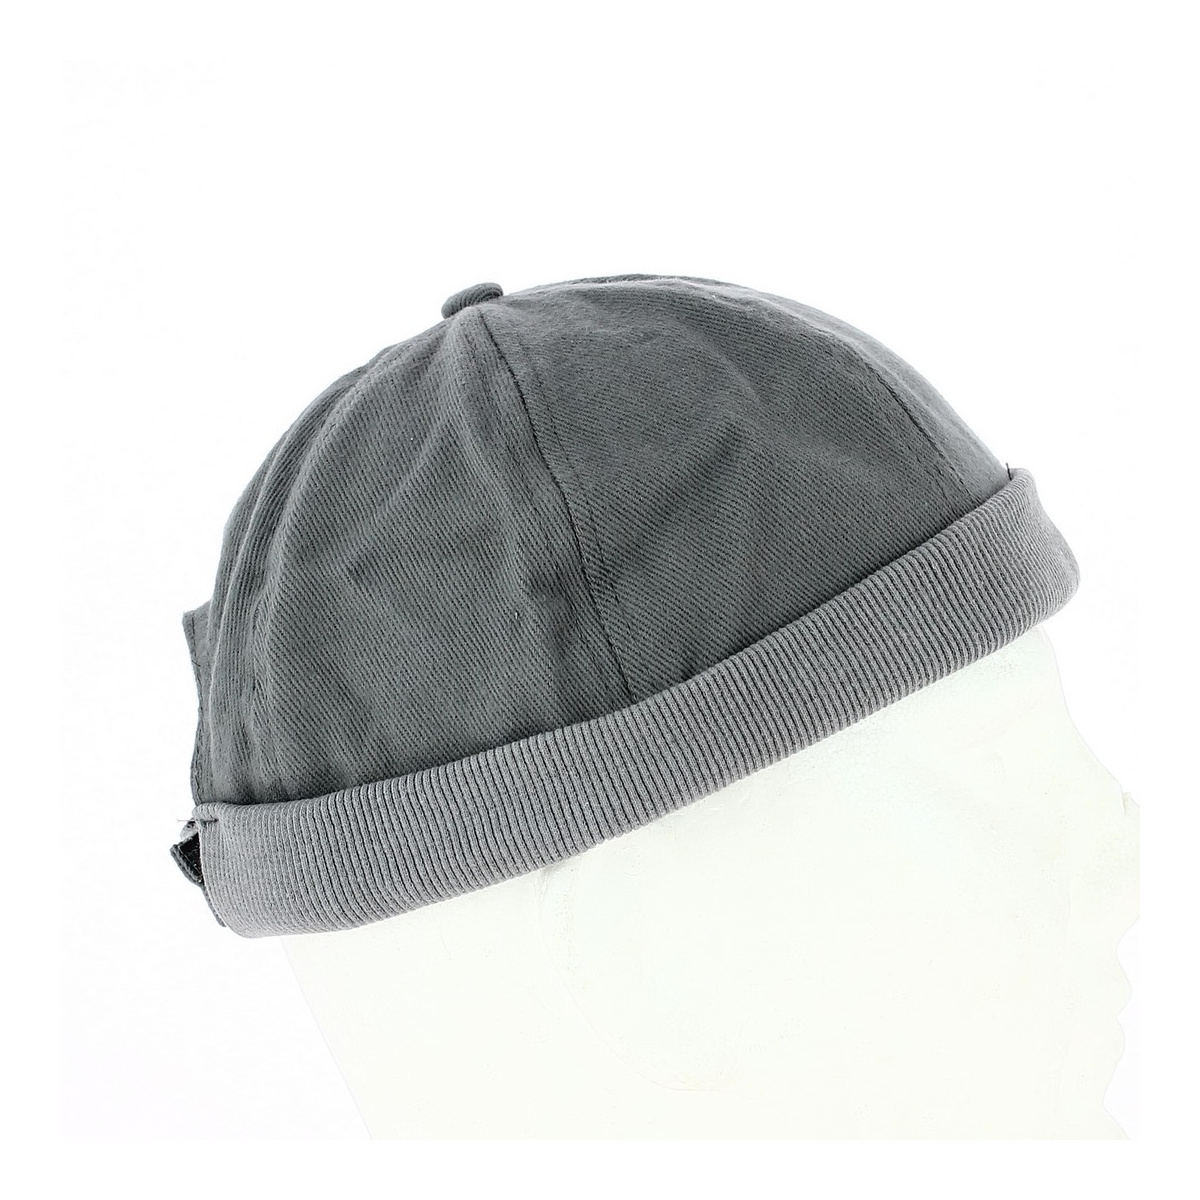 Bonnet marin breton ⇒ Achat bonnet miki pour homme en coton Reference :  5242